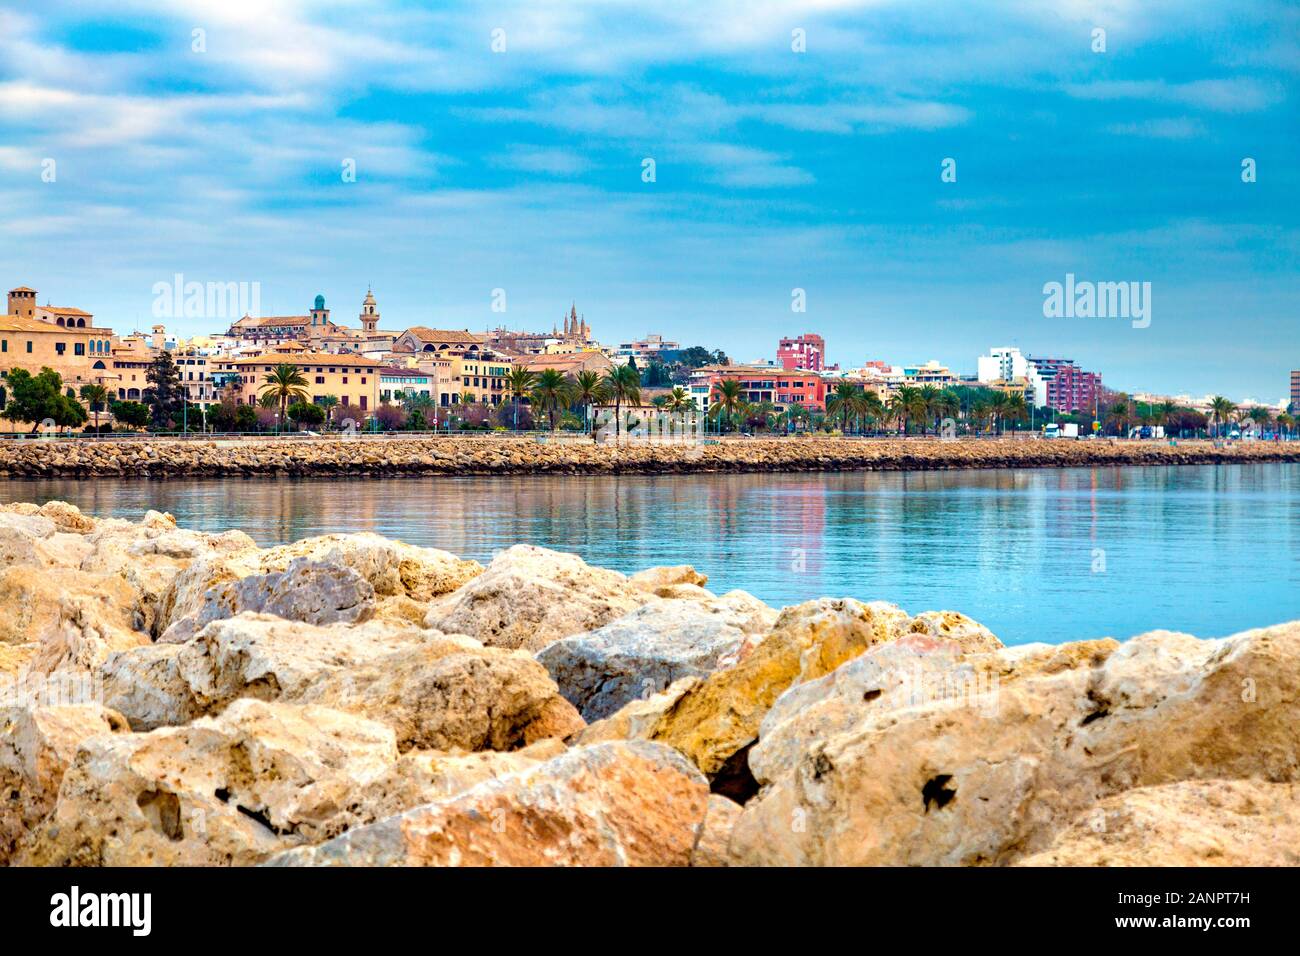 View of city and coastline from Puerto de Palma, Palma, Mallorca, Spain Stock Photo